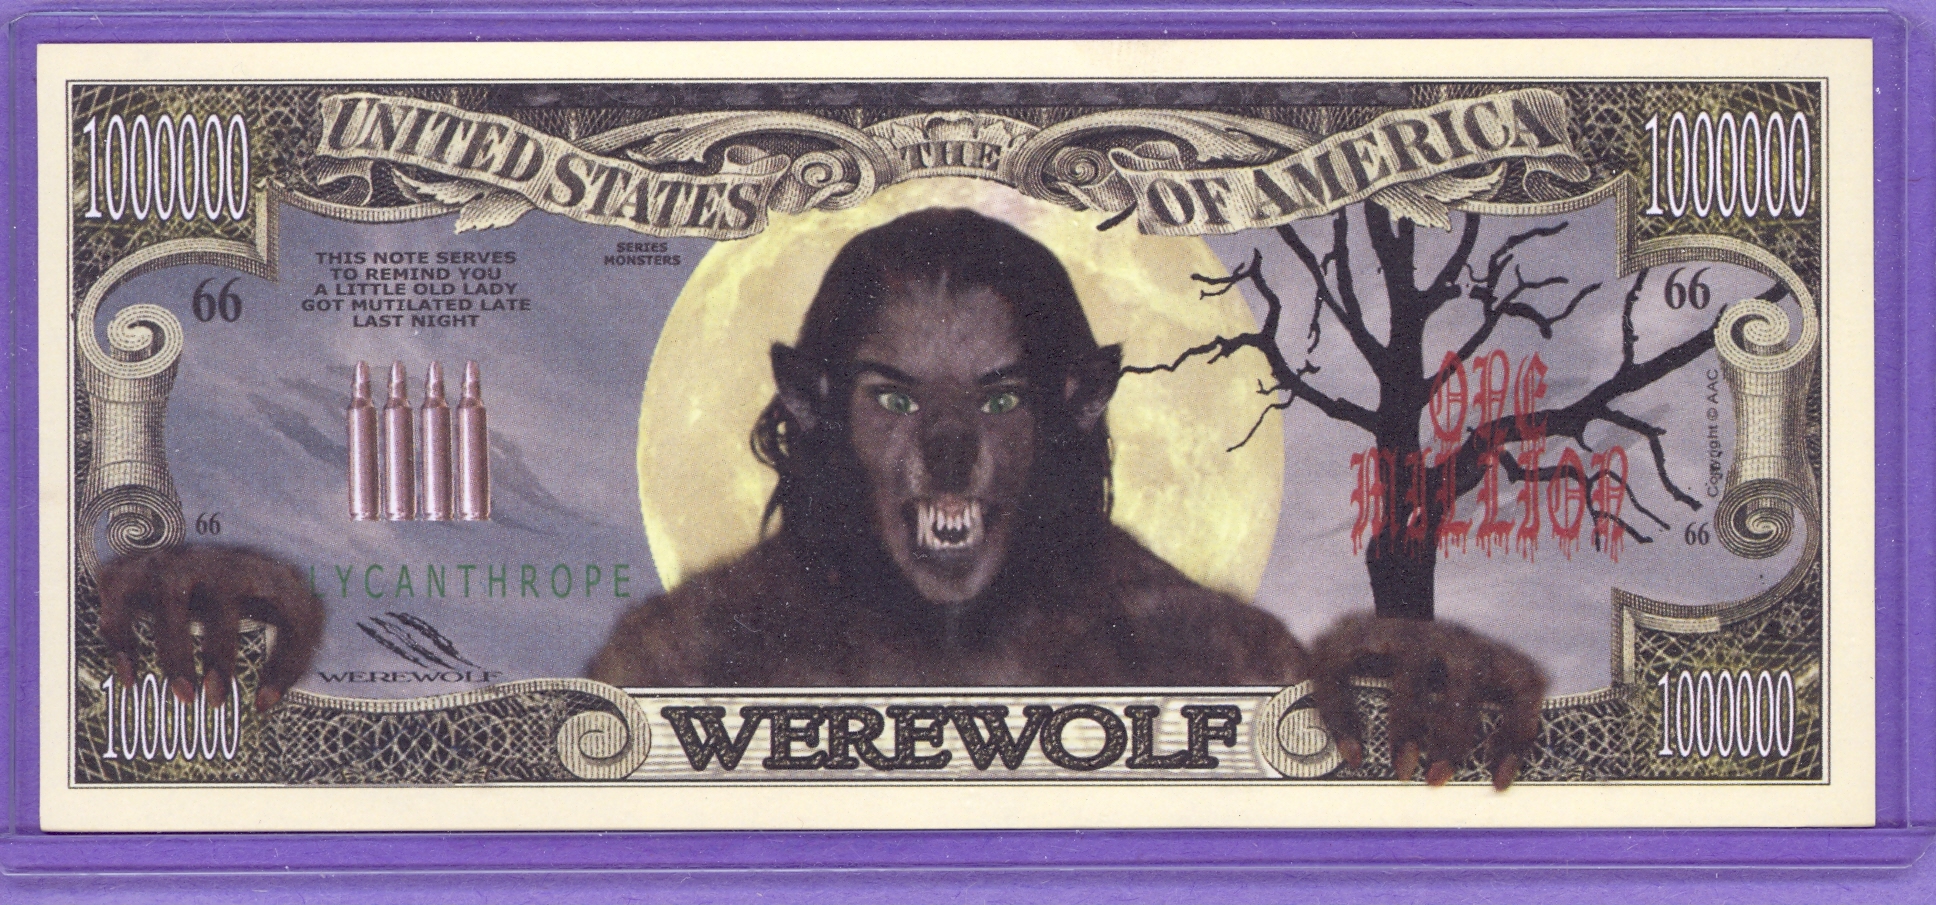 Werewolf $1,000,000 Novelty Note